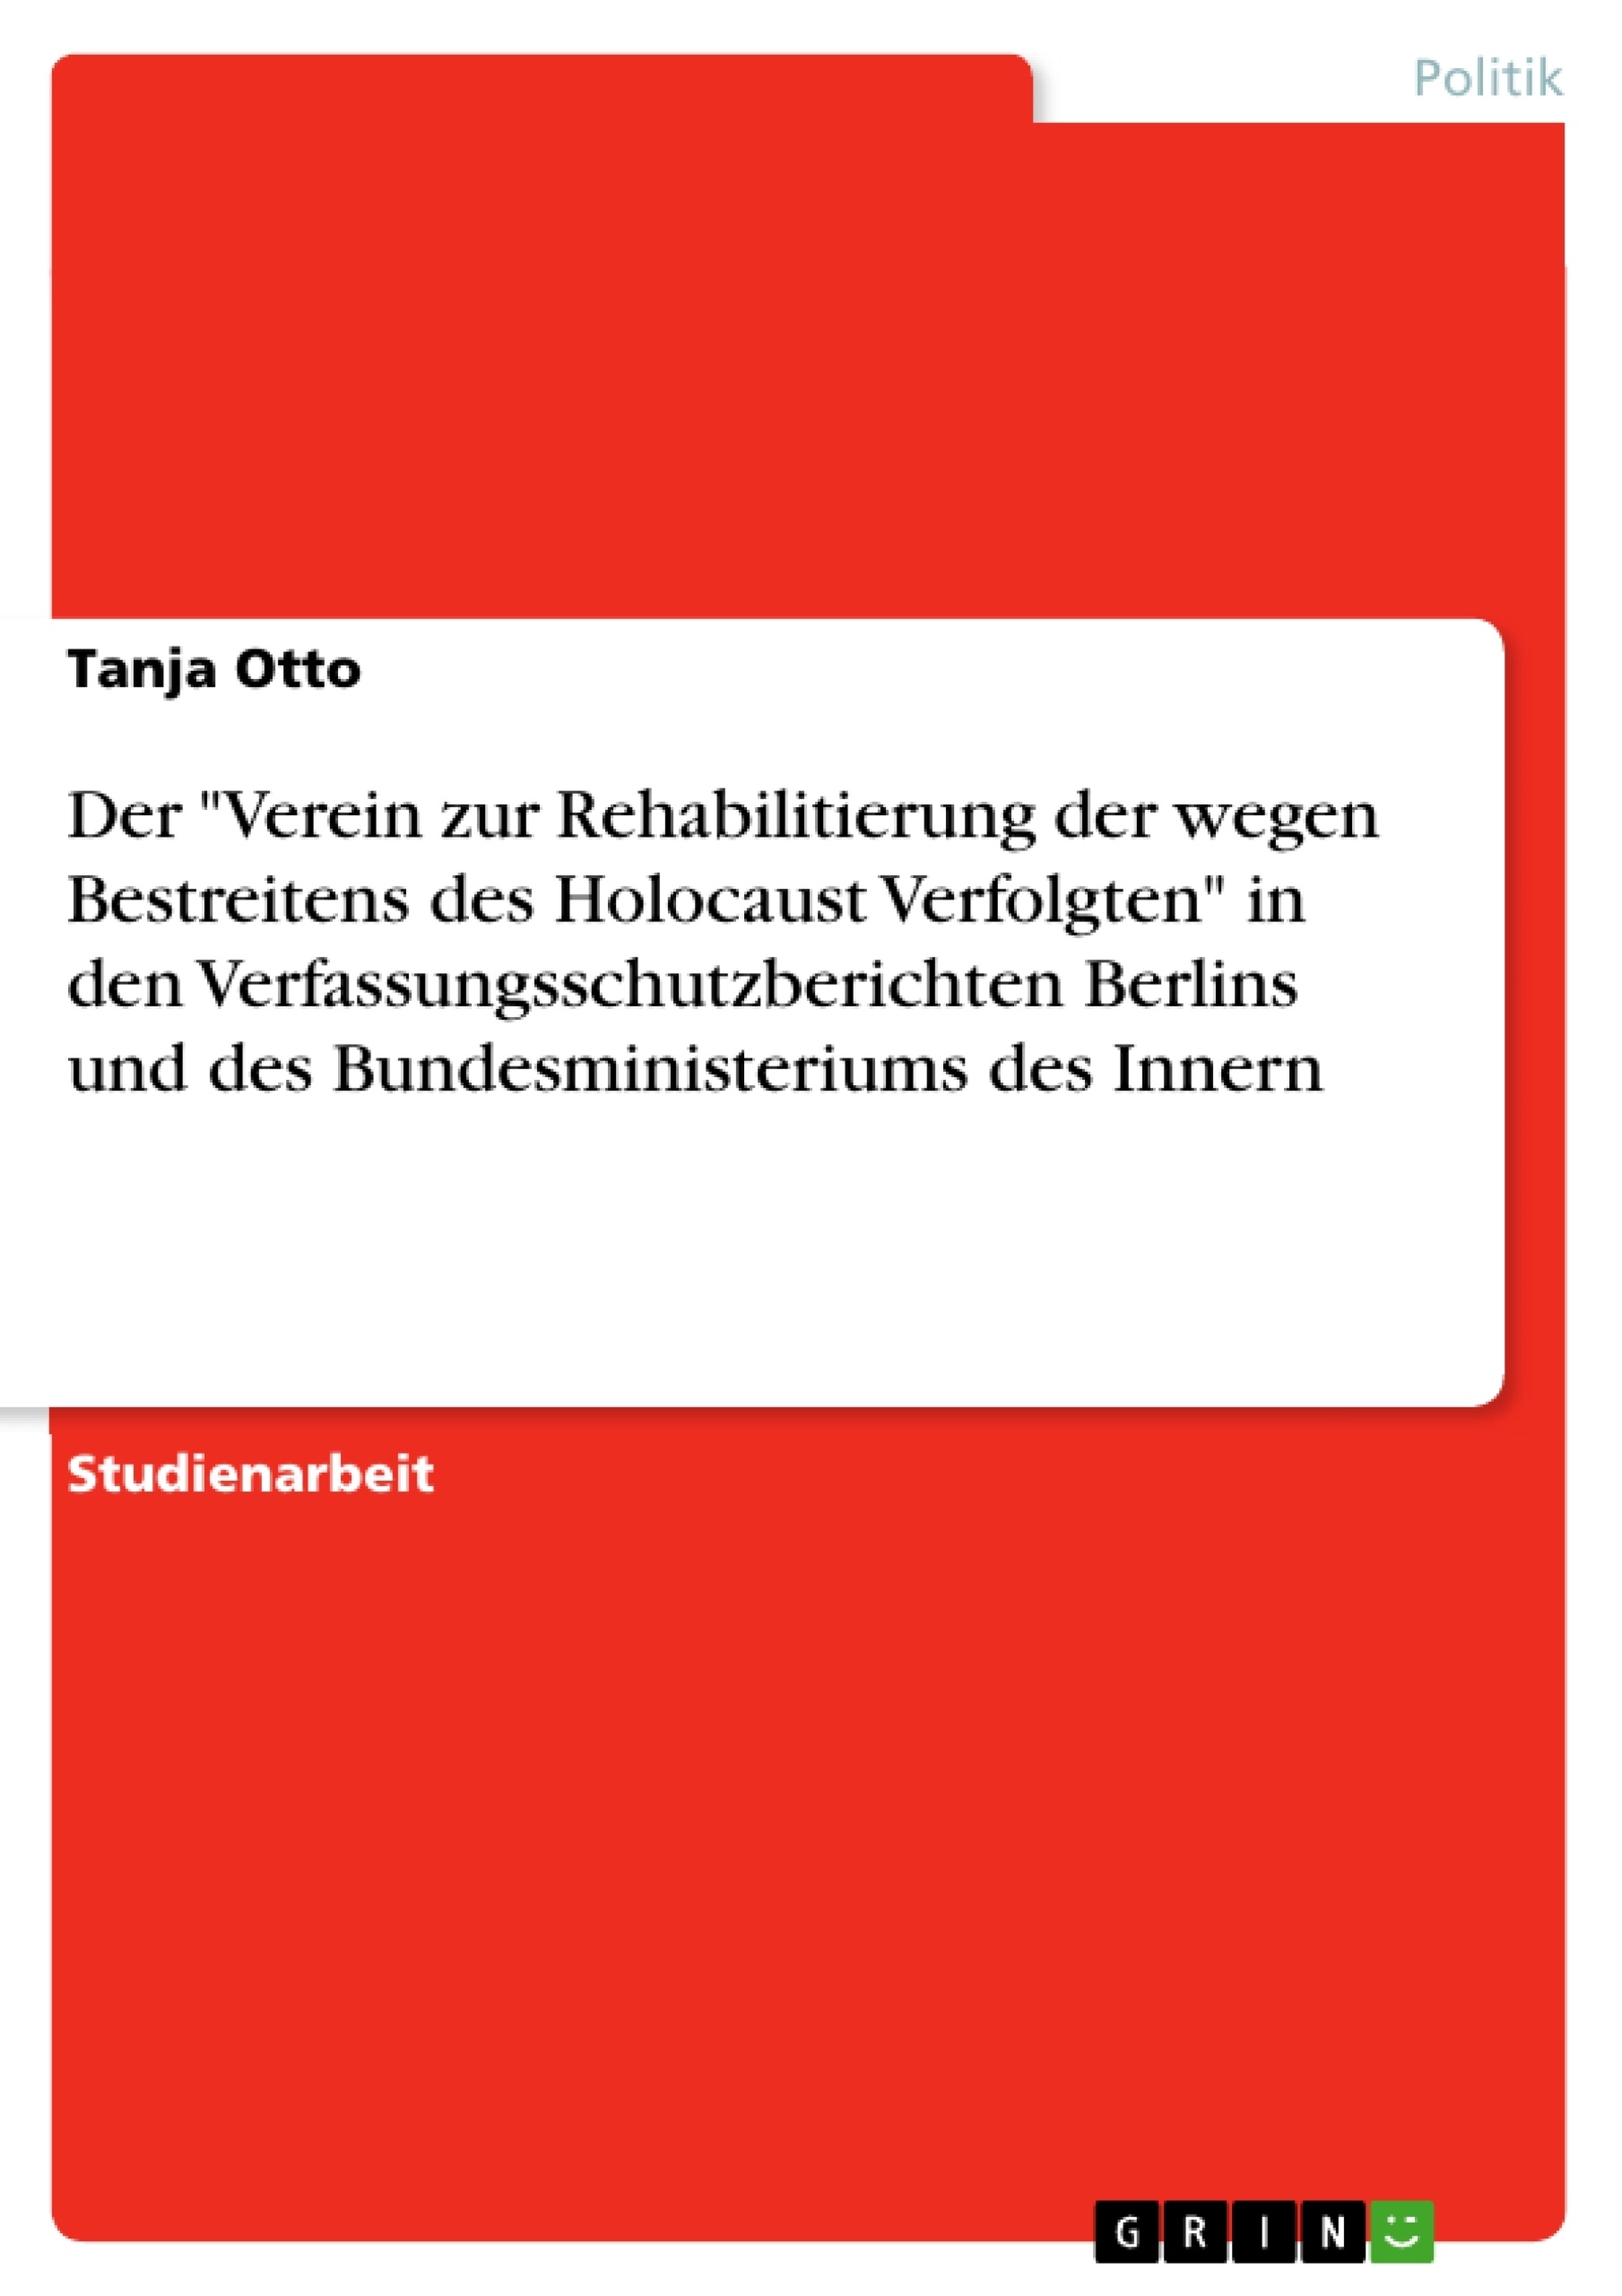 Título: Der "Verein zur Rehabilitierung der wegen Bestreitens des Holocaust Verfolgten" in den Verfassungsschutzberichten Berlins und des Bundesministeriums des Innern